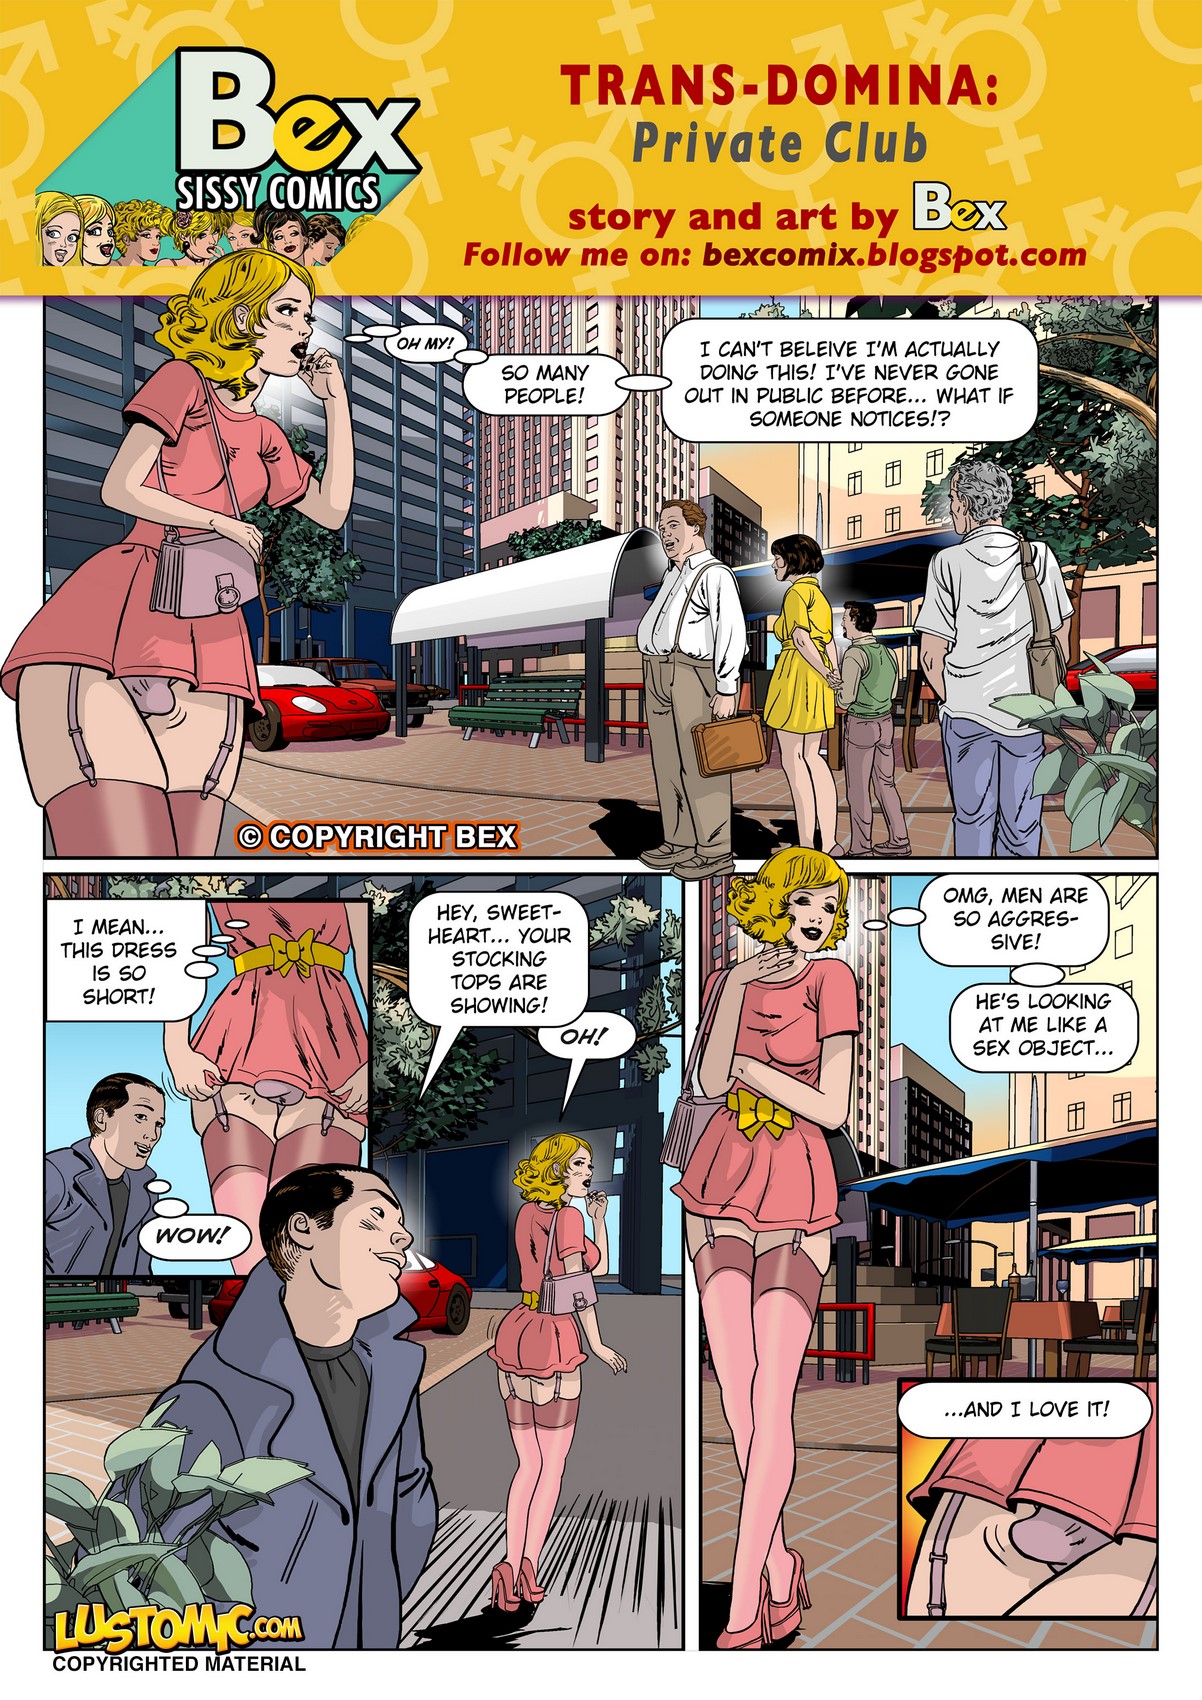 Cartoon Strip Anal - Trans Xxx Comic | Anal Dream House